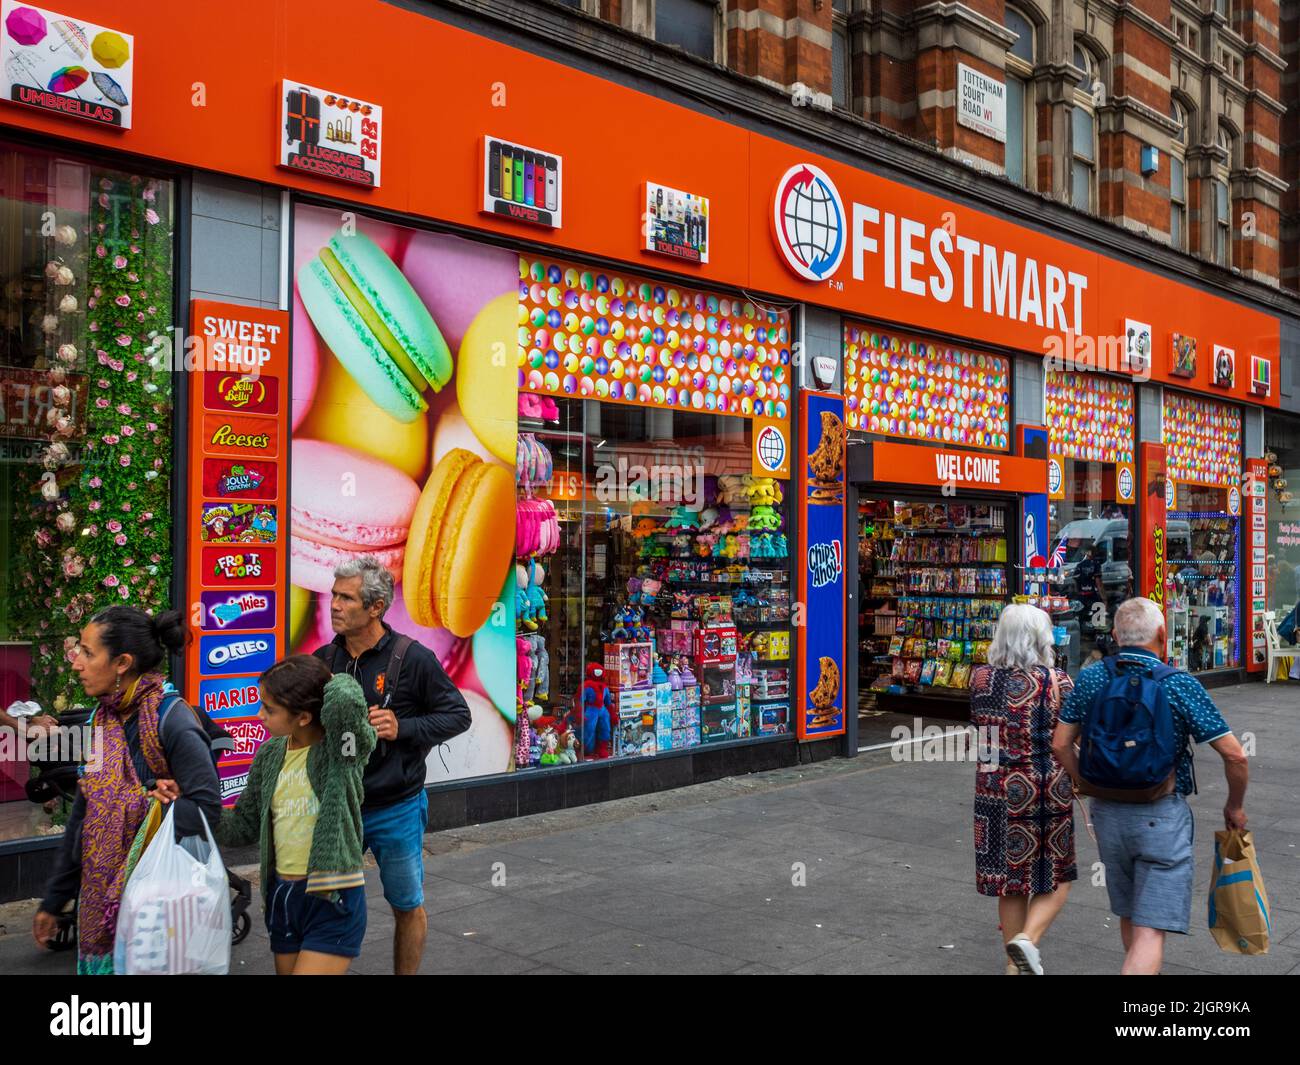 American style Candy Store dans le West End de Londres. Fiestamart Candy Store à la jonction de Oxford St et Tottenham court Rd, Londres. MAGASINS DE bonbons AUX ÉTATS-UNIS. Banque D'Images